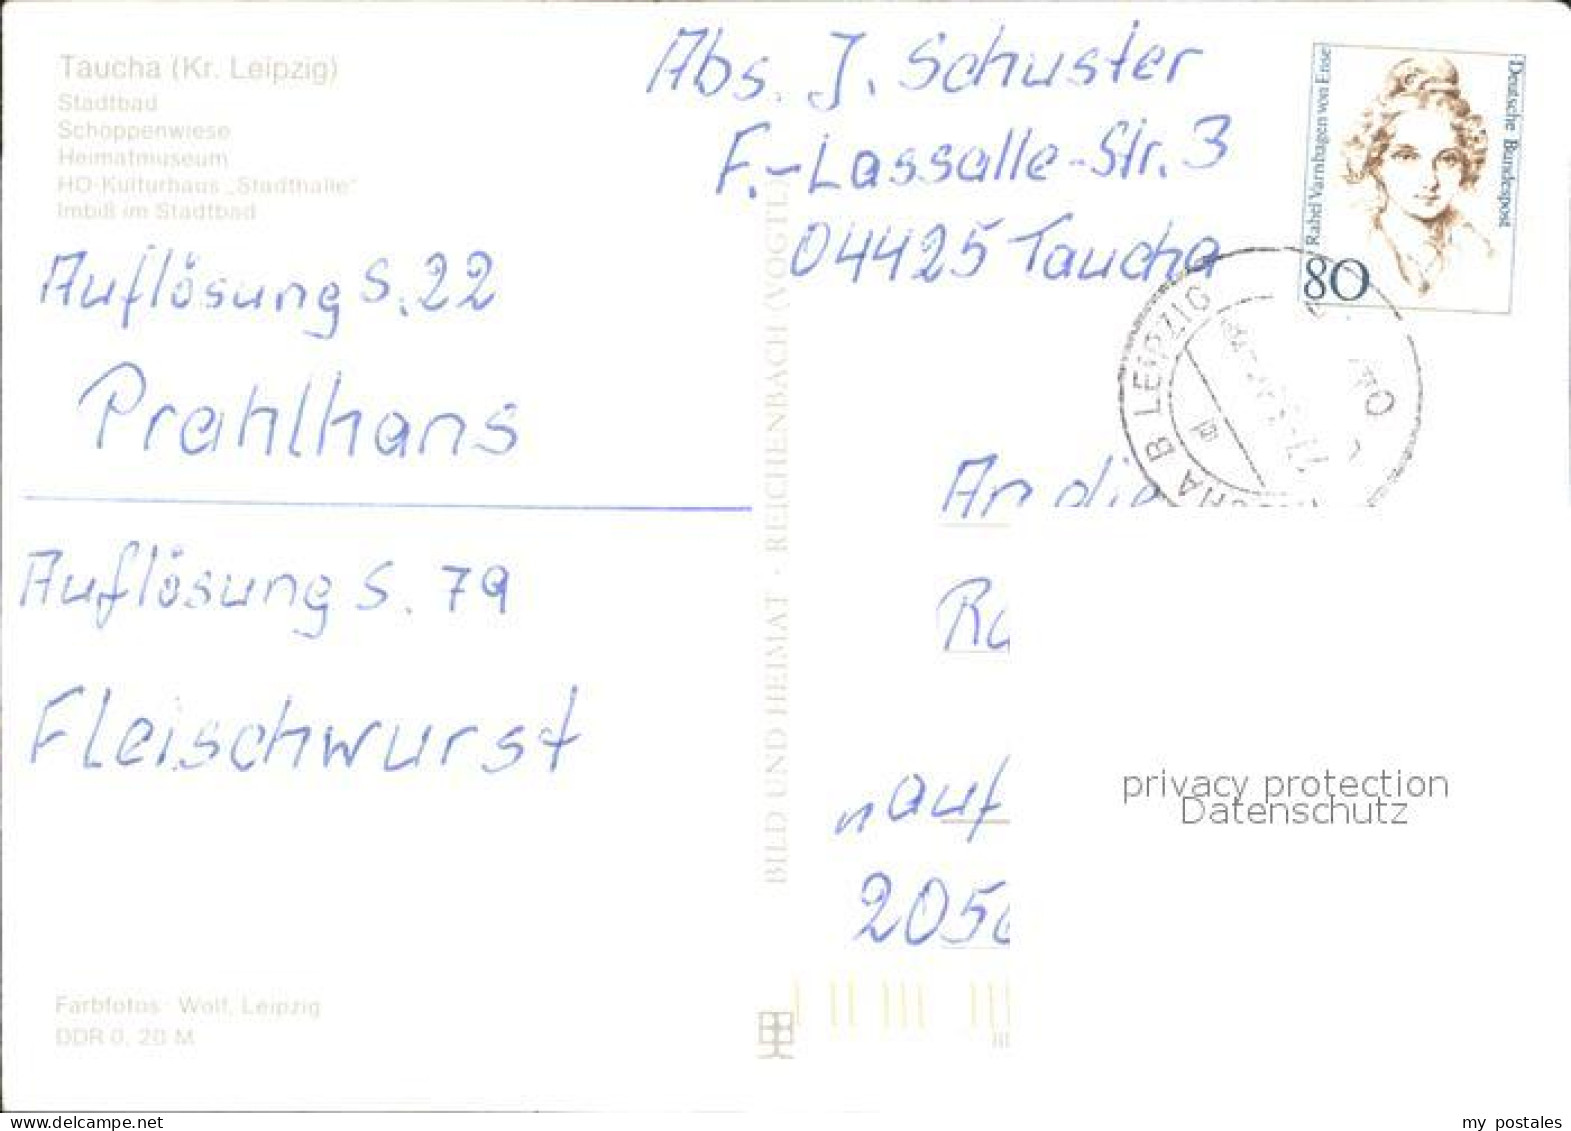 72922488 Taucha Stadtbad Schoeppenwiese HO-Kulturhaus Stadthalle  Taucha - Taucha